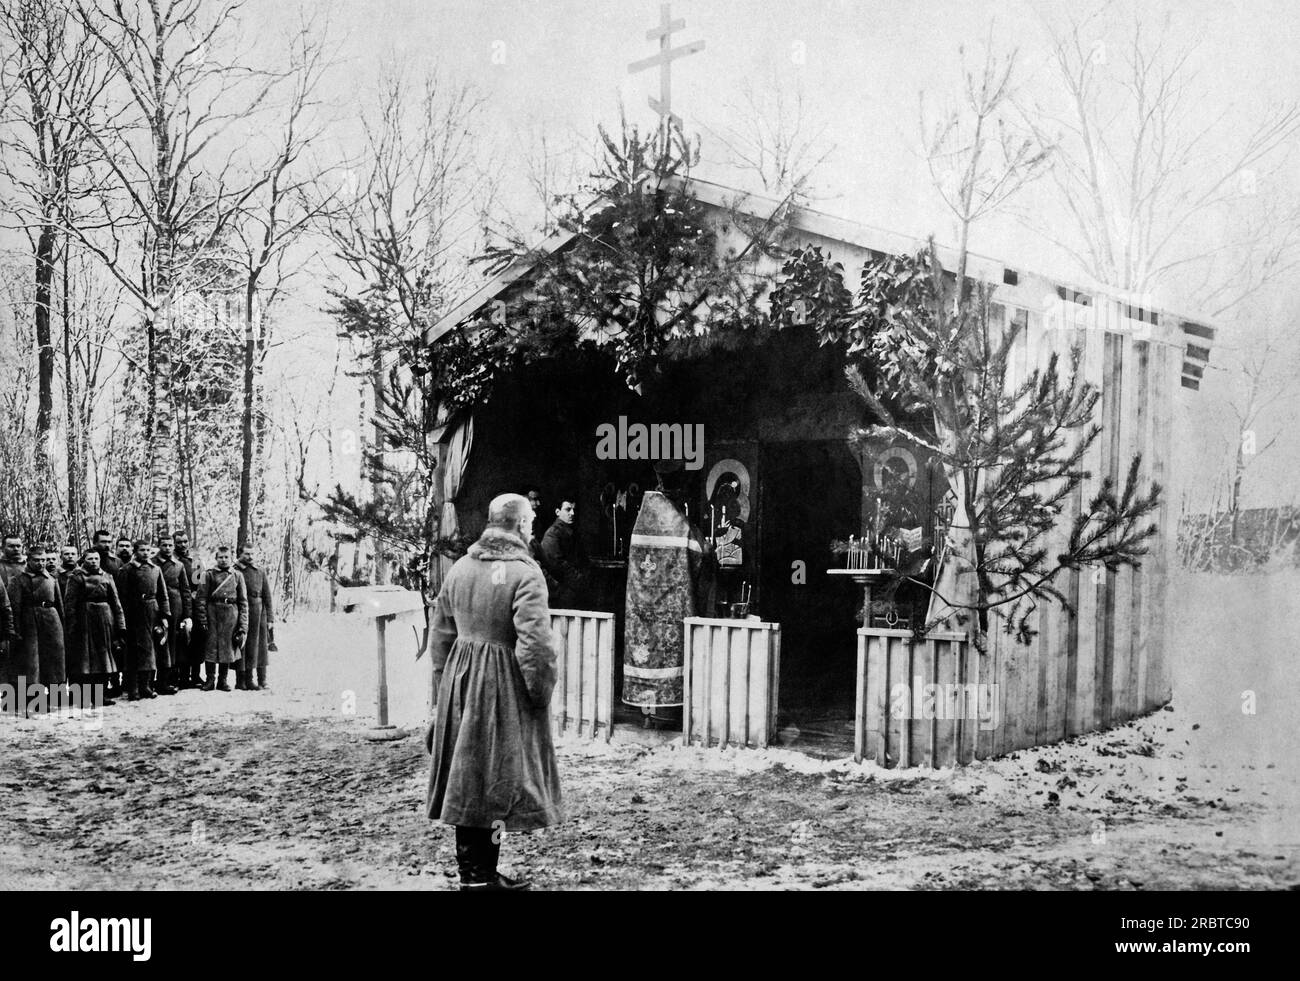 Frankreich: 19. Februar 1917 General Lohvitsky und russische Soldaten stehen vor einer provisorischen russischen Kirche an der Französischen Front, wo ein russischer Priester religiöse Gottesdienste feiert. Lohvitsky ist der Kommandant aller russischen Streitkräfte in Frankreich. Stockfoto